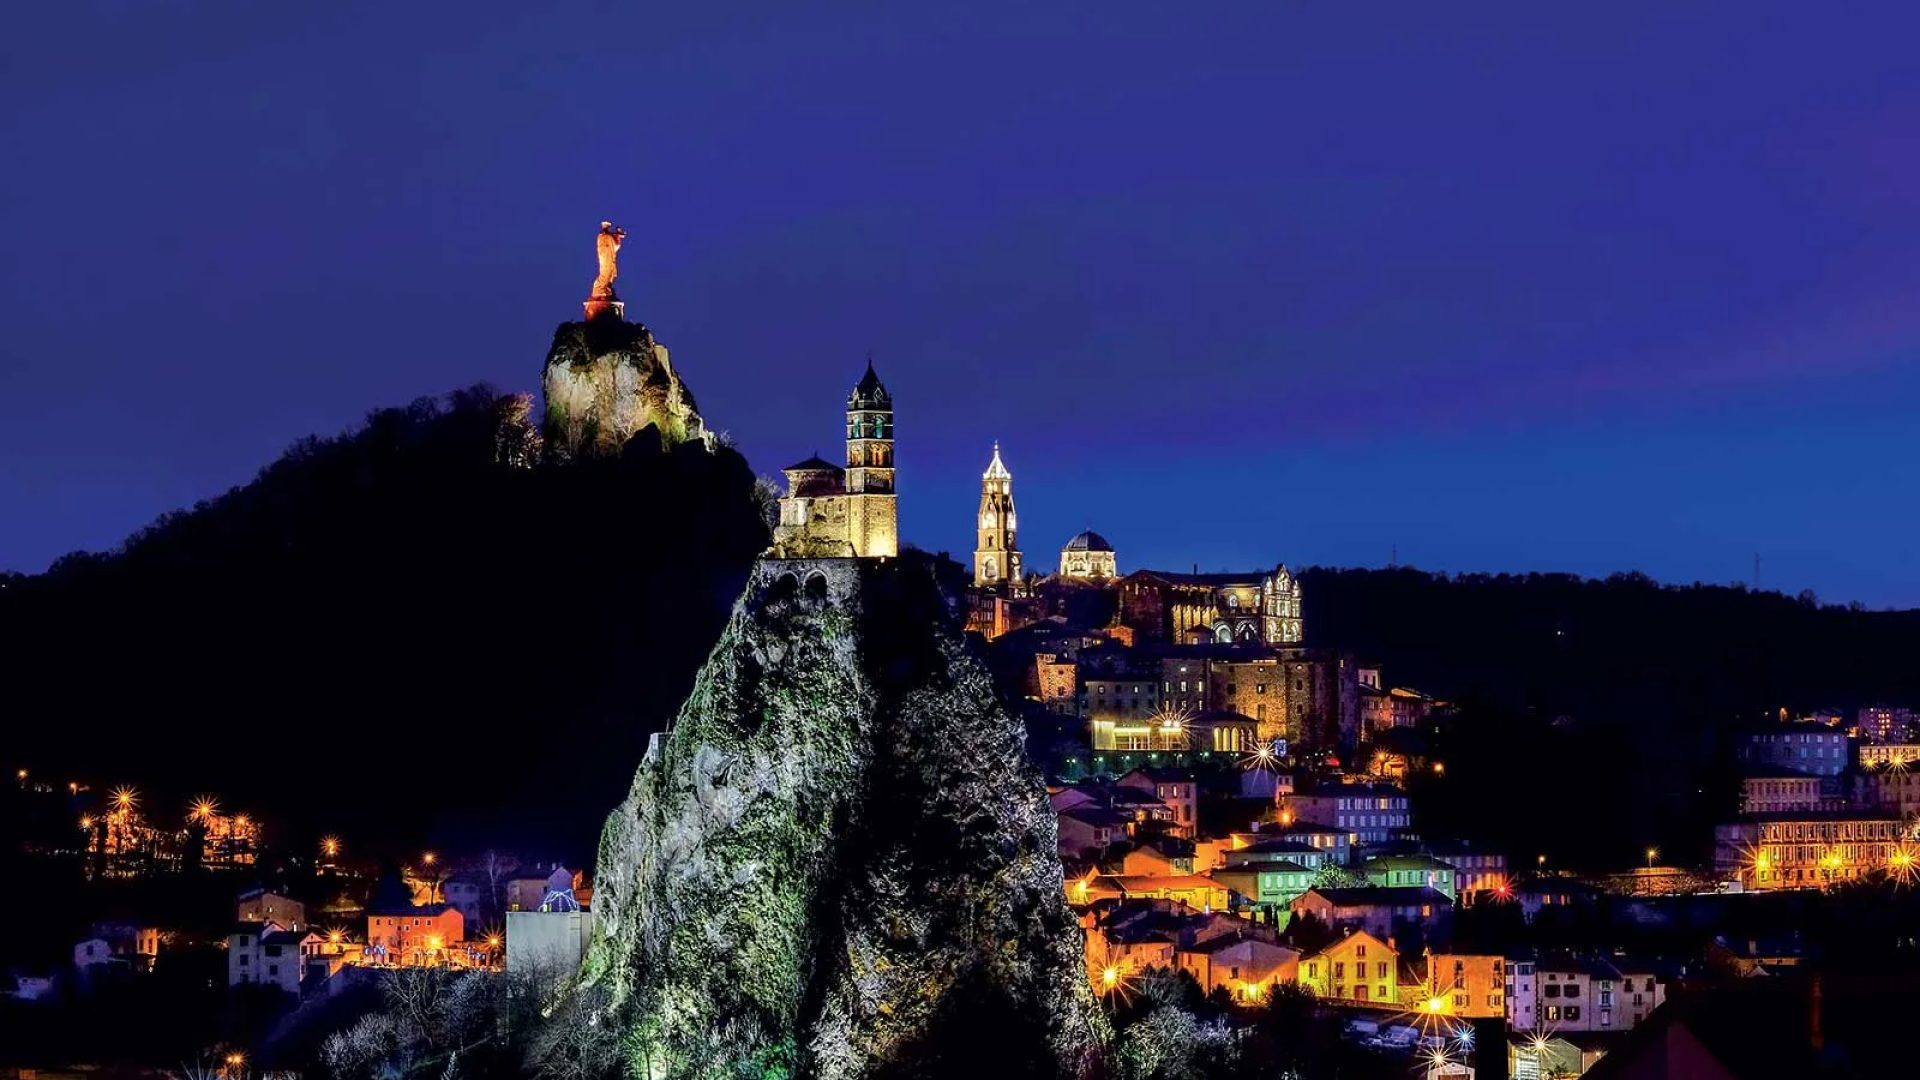 Nachtansicht des Rocher Saint-Michel, der Statue Notre-Dame de France und der Stadt Puy-en-Velay